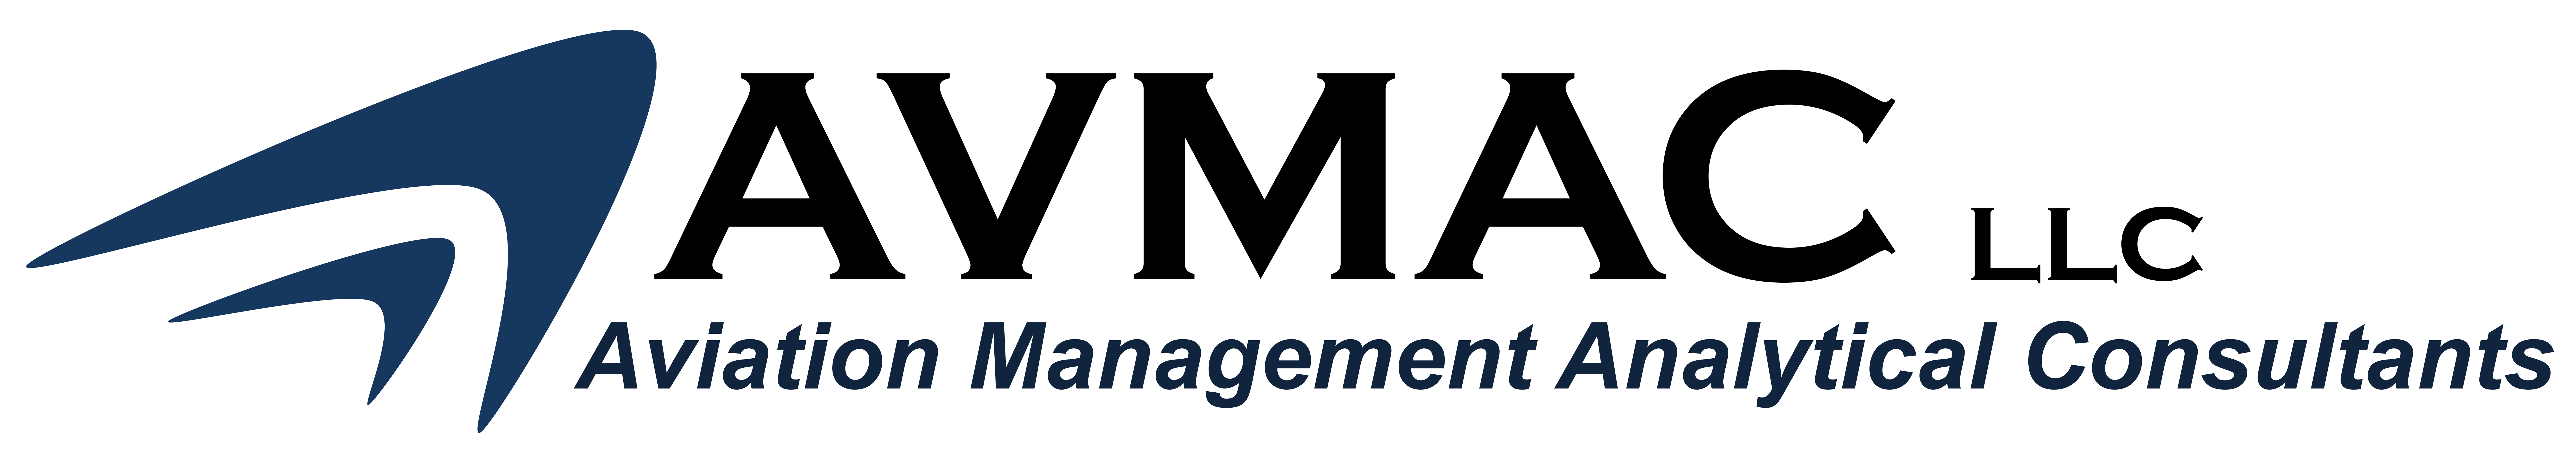 AVMAC LLC Company Logo